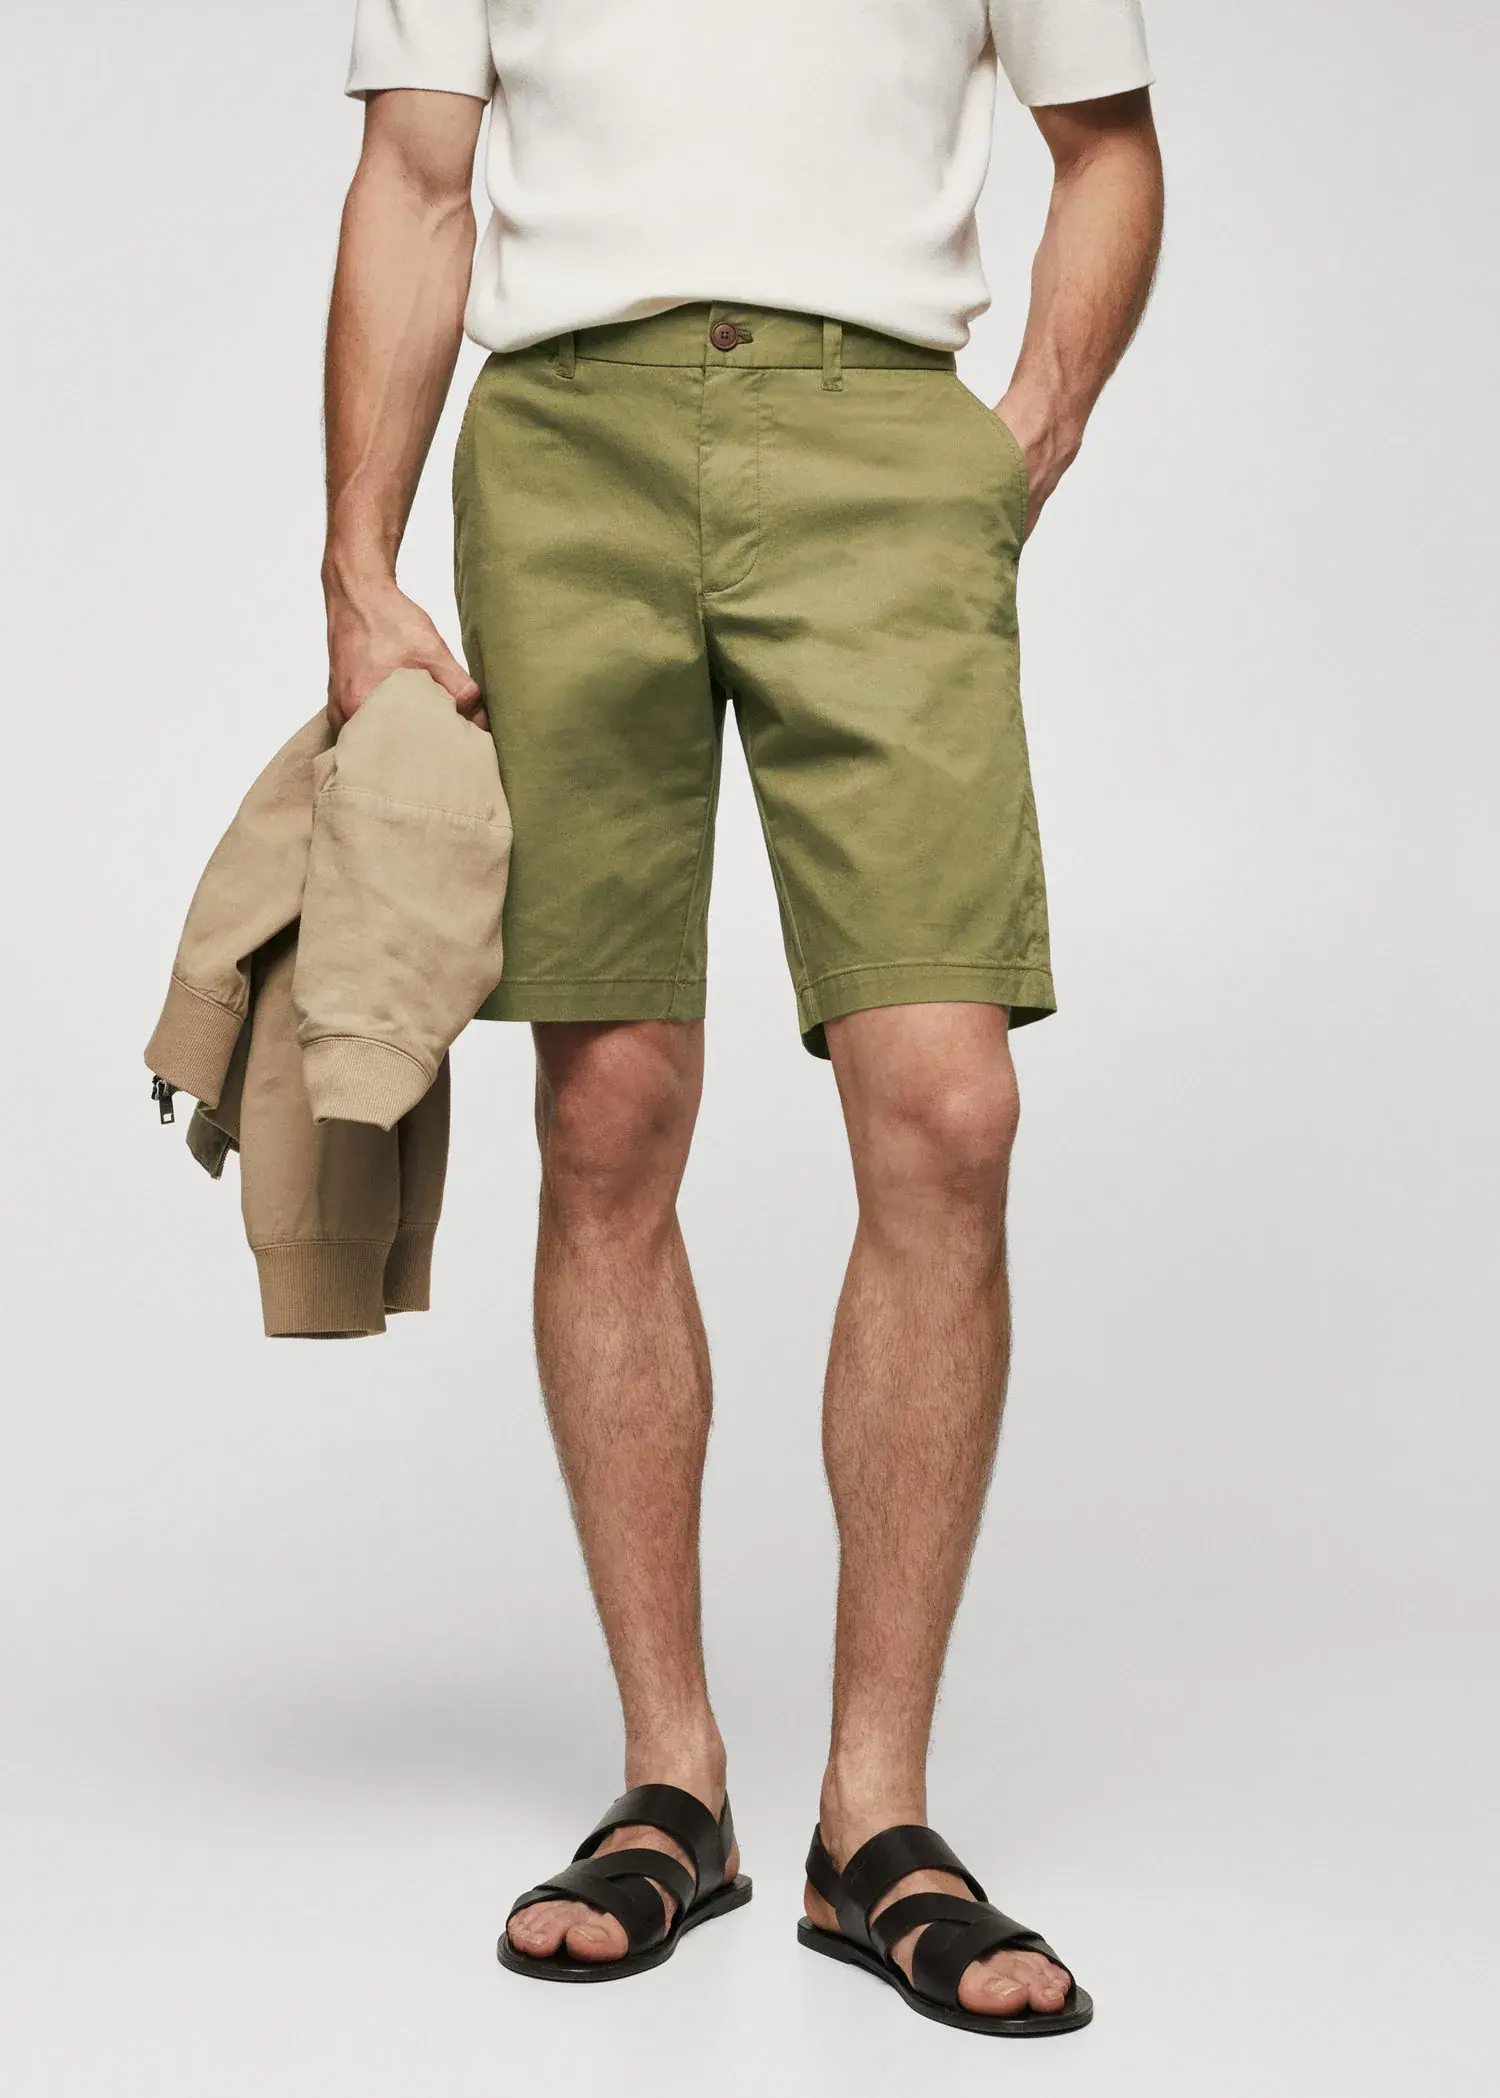 Mango Chino Bermuda shorts. a man in green shorts holding a tan jacket. 